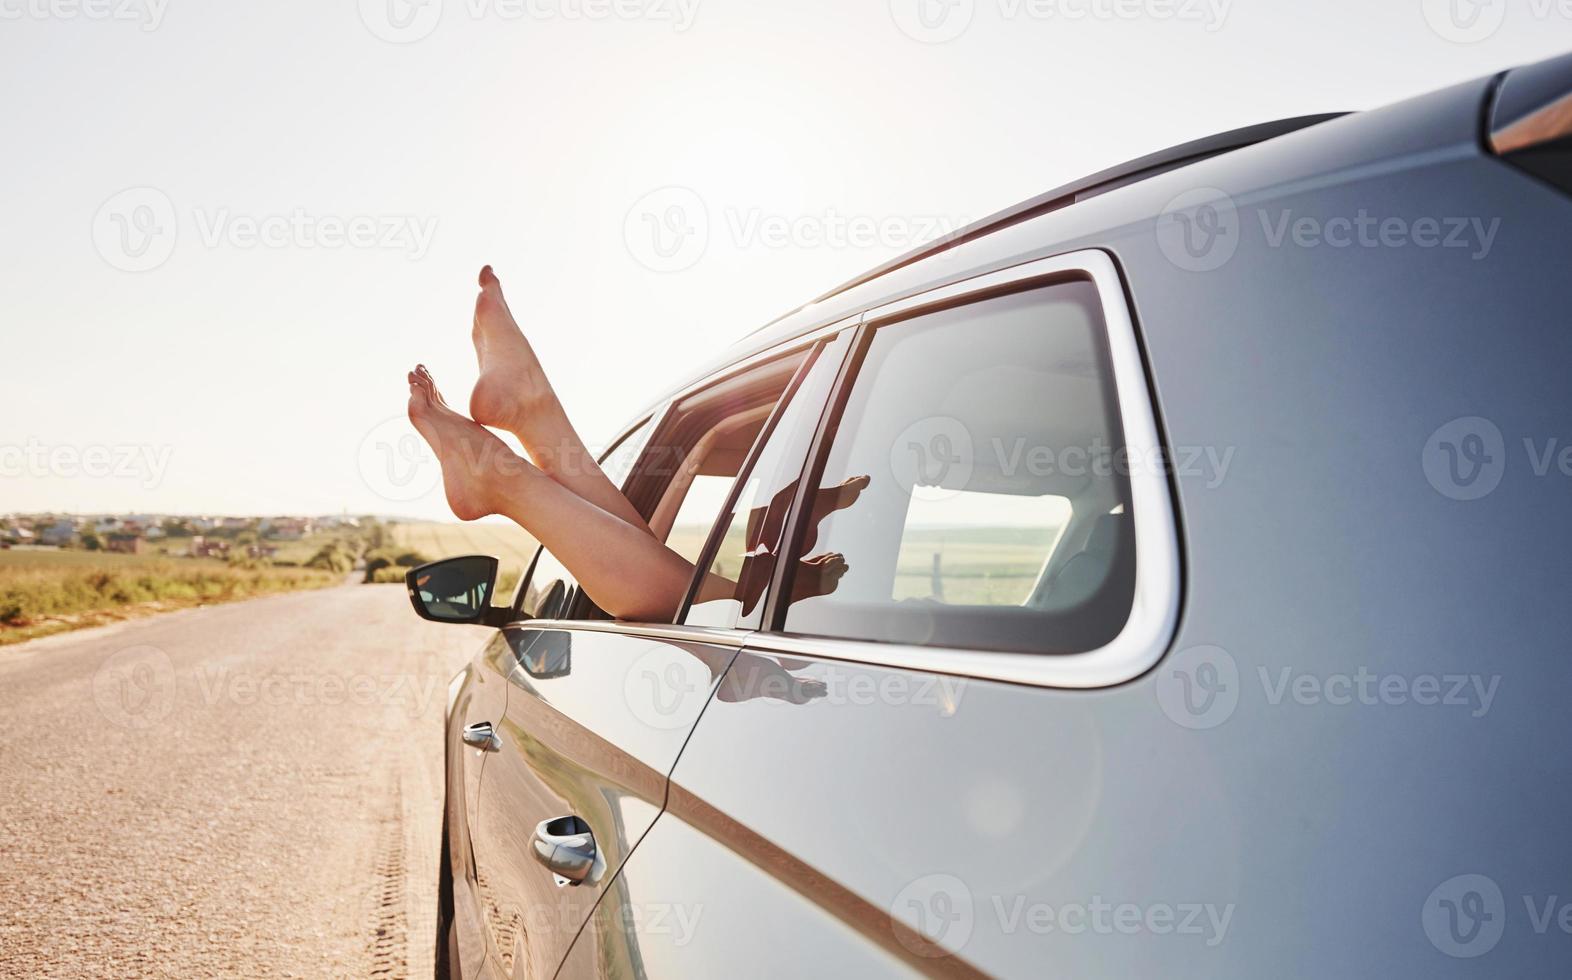 på väg. flicka sätter ut henne ben på de bil fönster på landsbygden foto